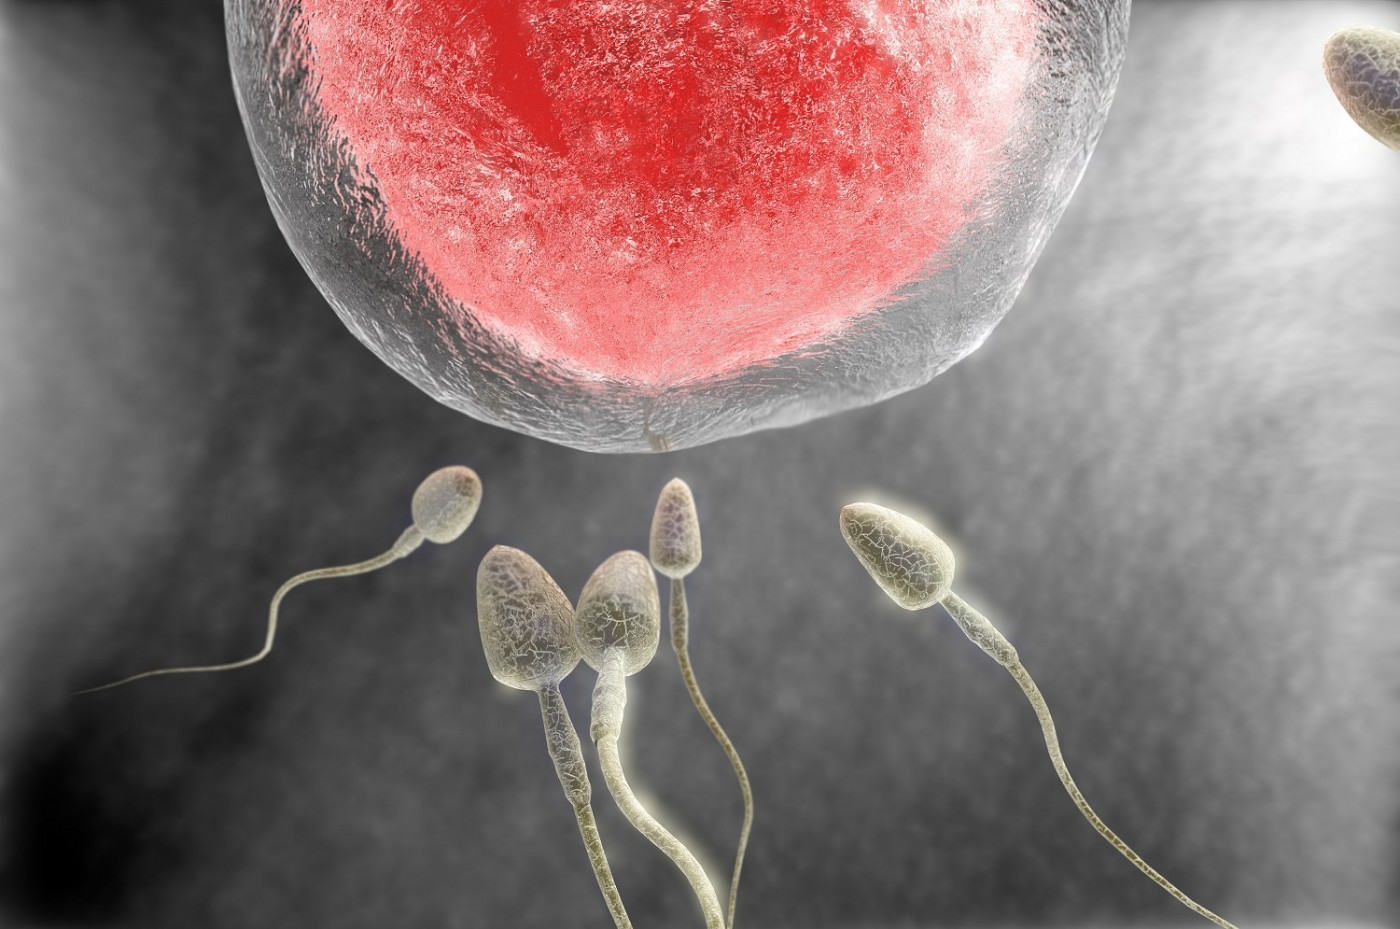 мужская сперма и ее влияние на женский организм фото 105